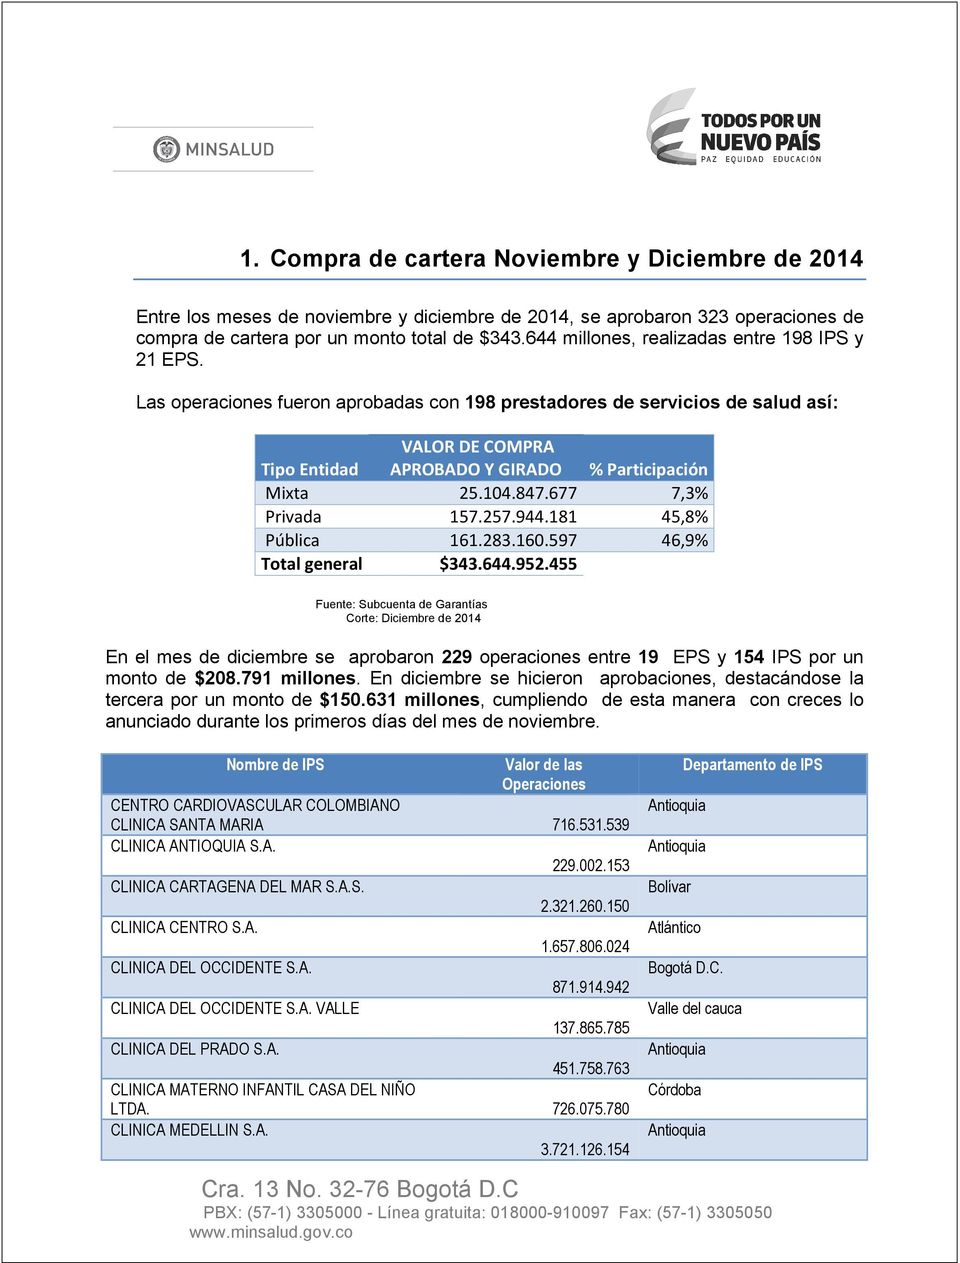 Las operaciones fueron aprobadas con 198 prestadores de servicios de salud así: VALOR DE COMPRA Tipo Entidad APROBADO Y GIRADO % Participación Mixta 25.104.847.677 7,3% Privada 157.257.944.